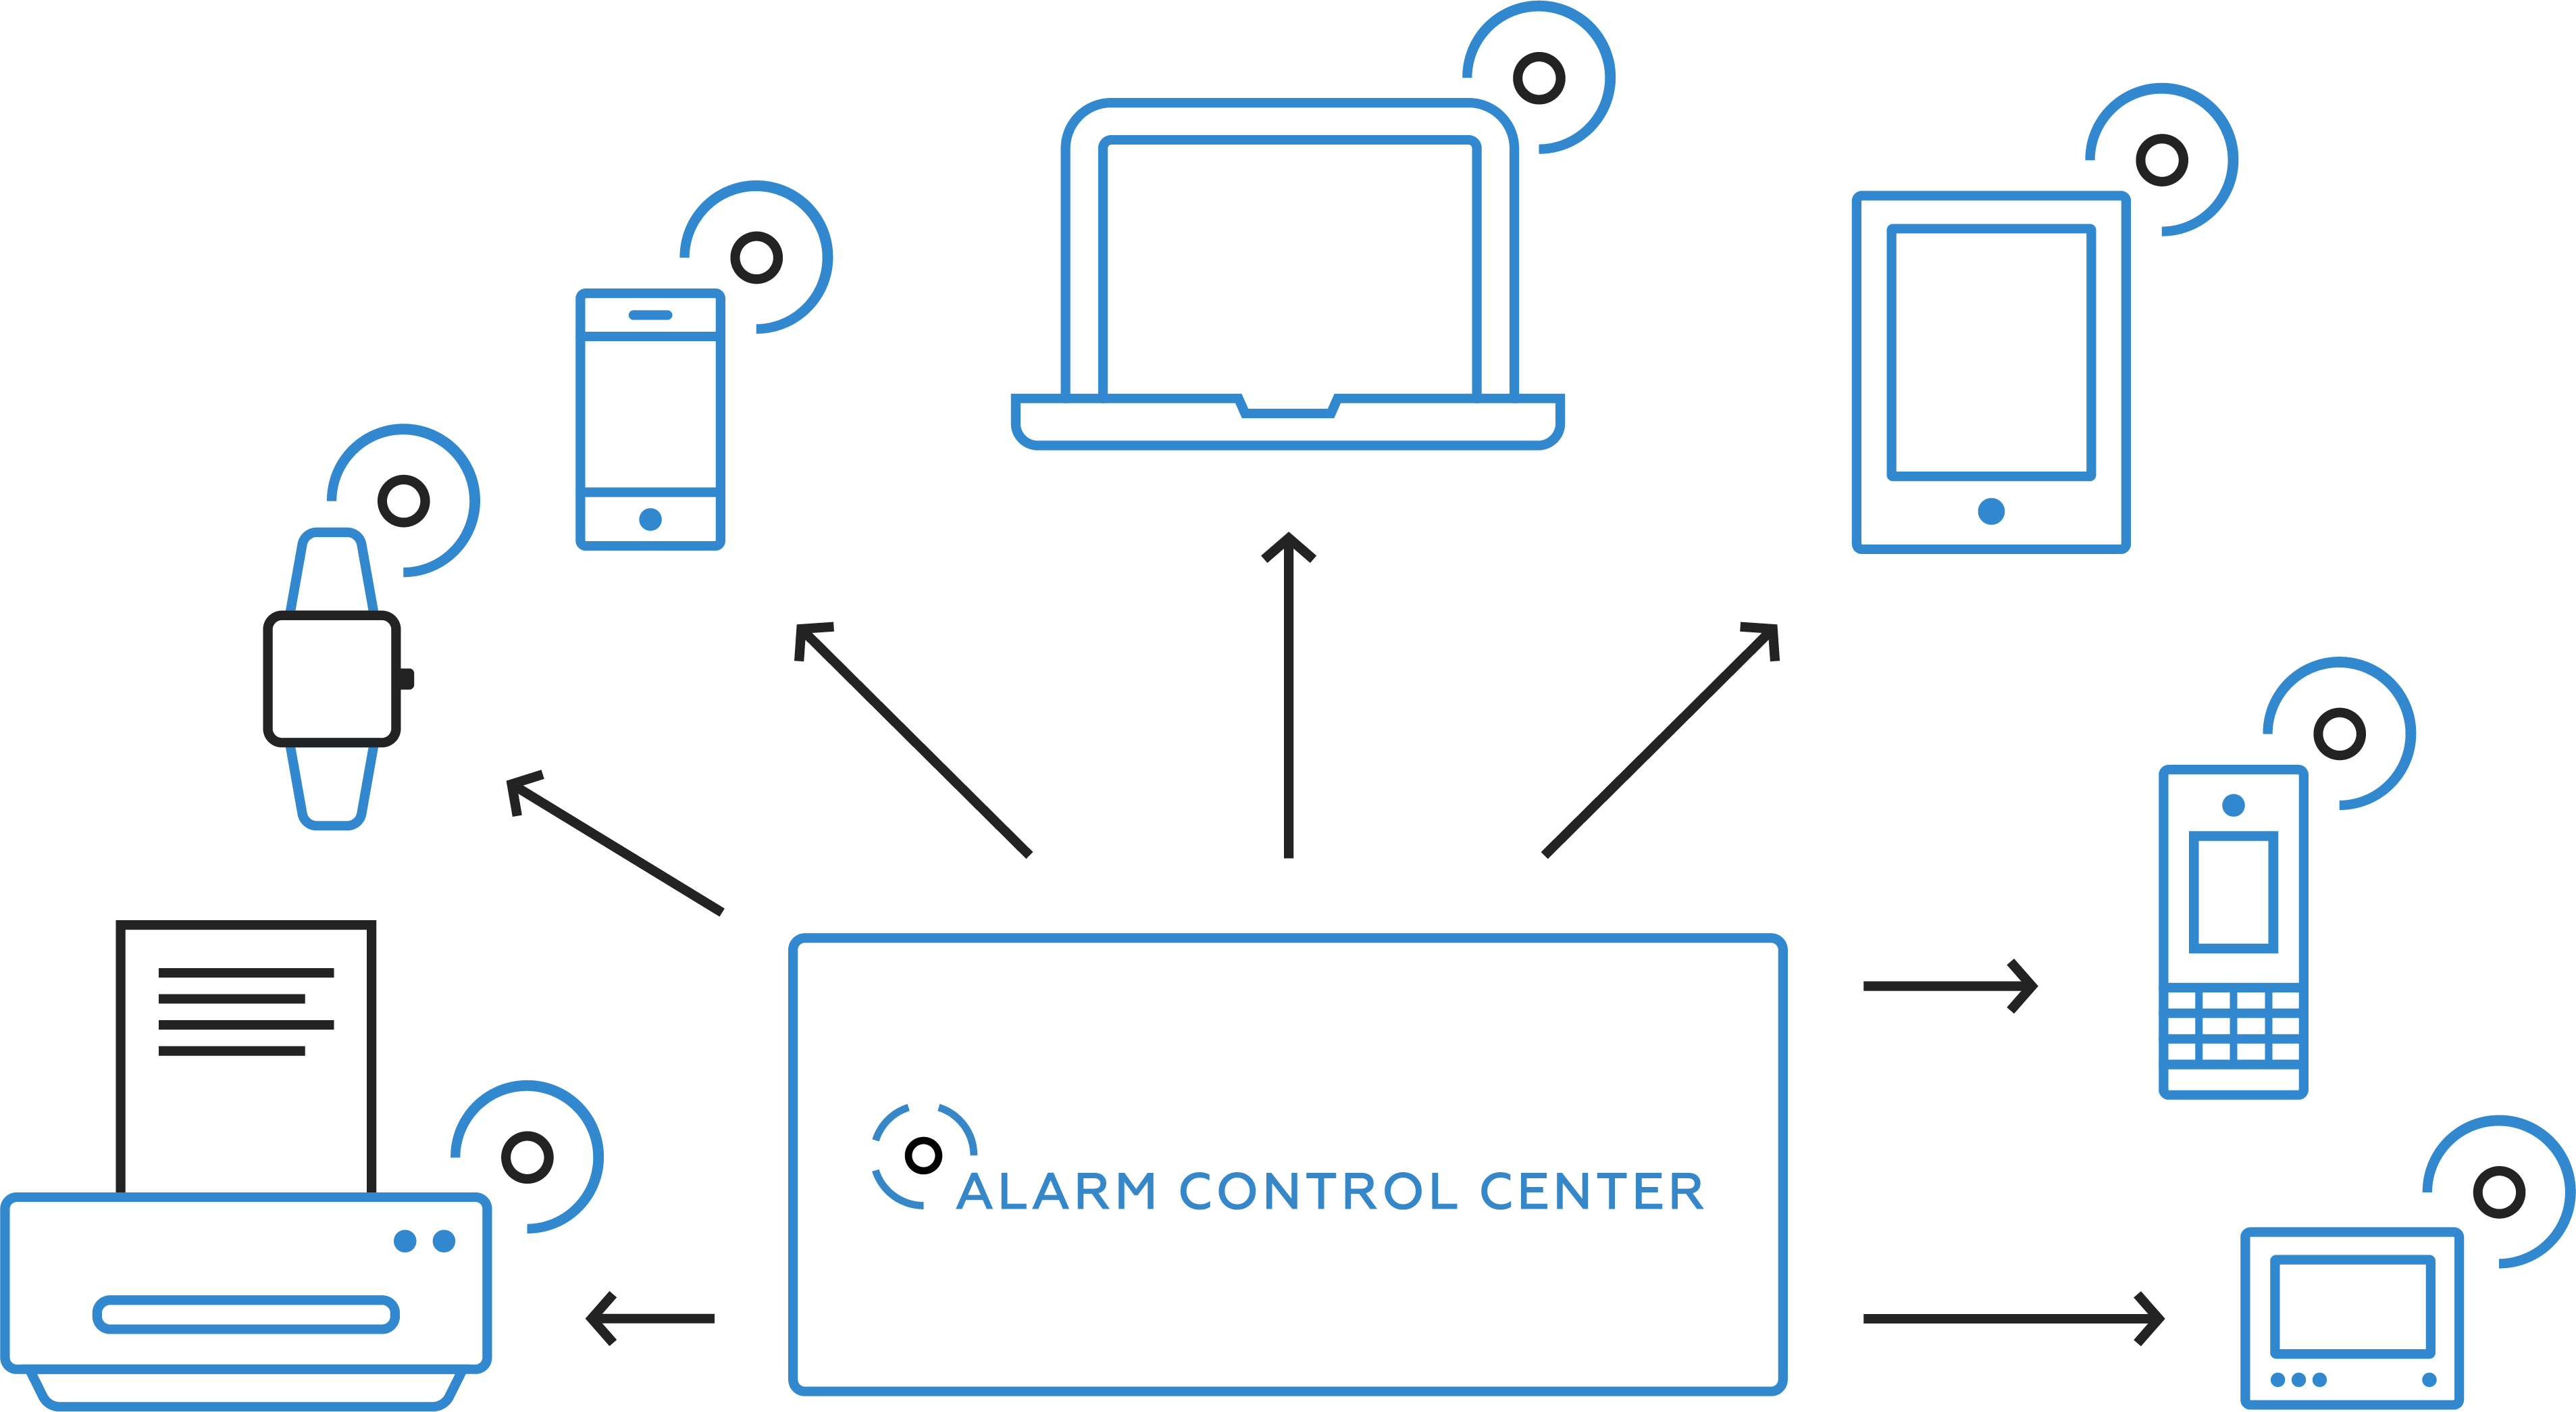 Alarm Control Center - communication channels